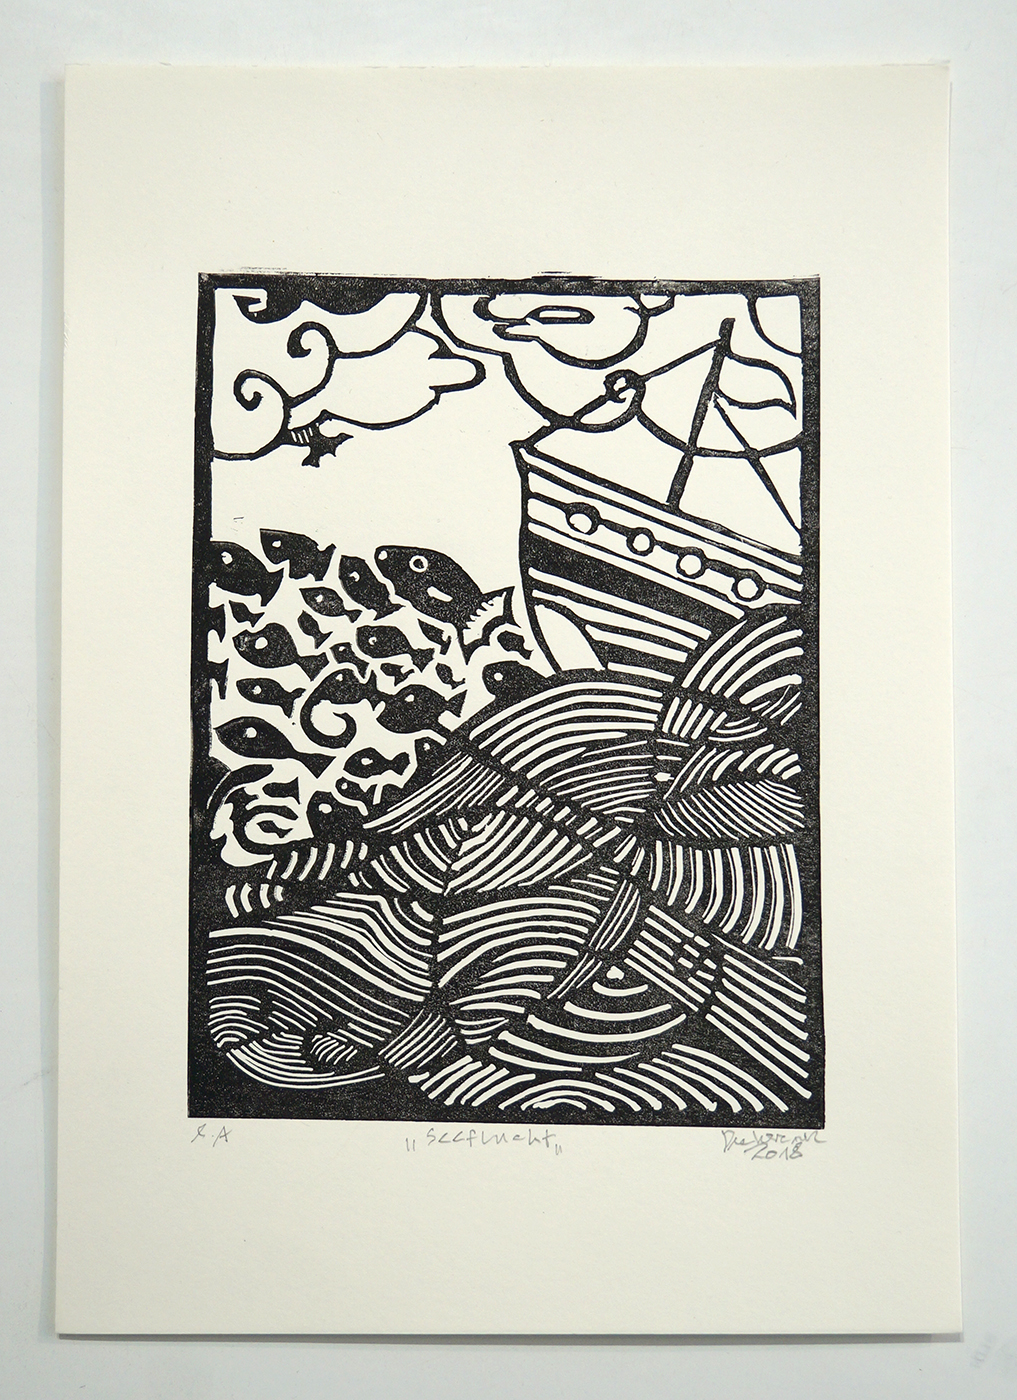 Deelorean: "Seeflucht"  - Linoleum Print